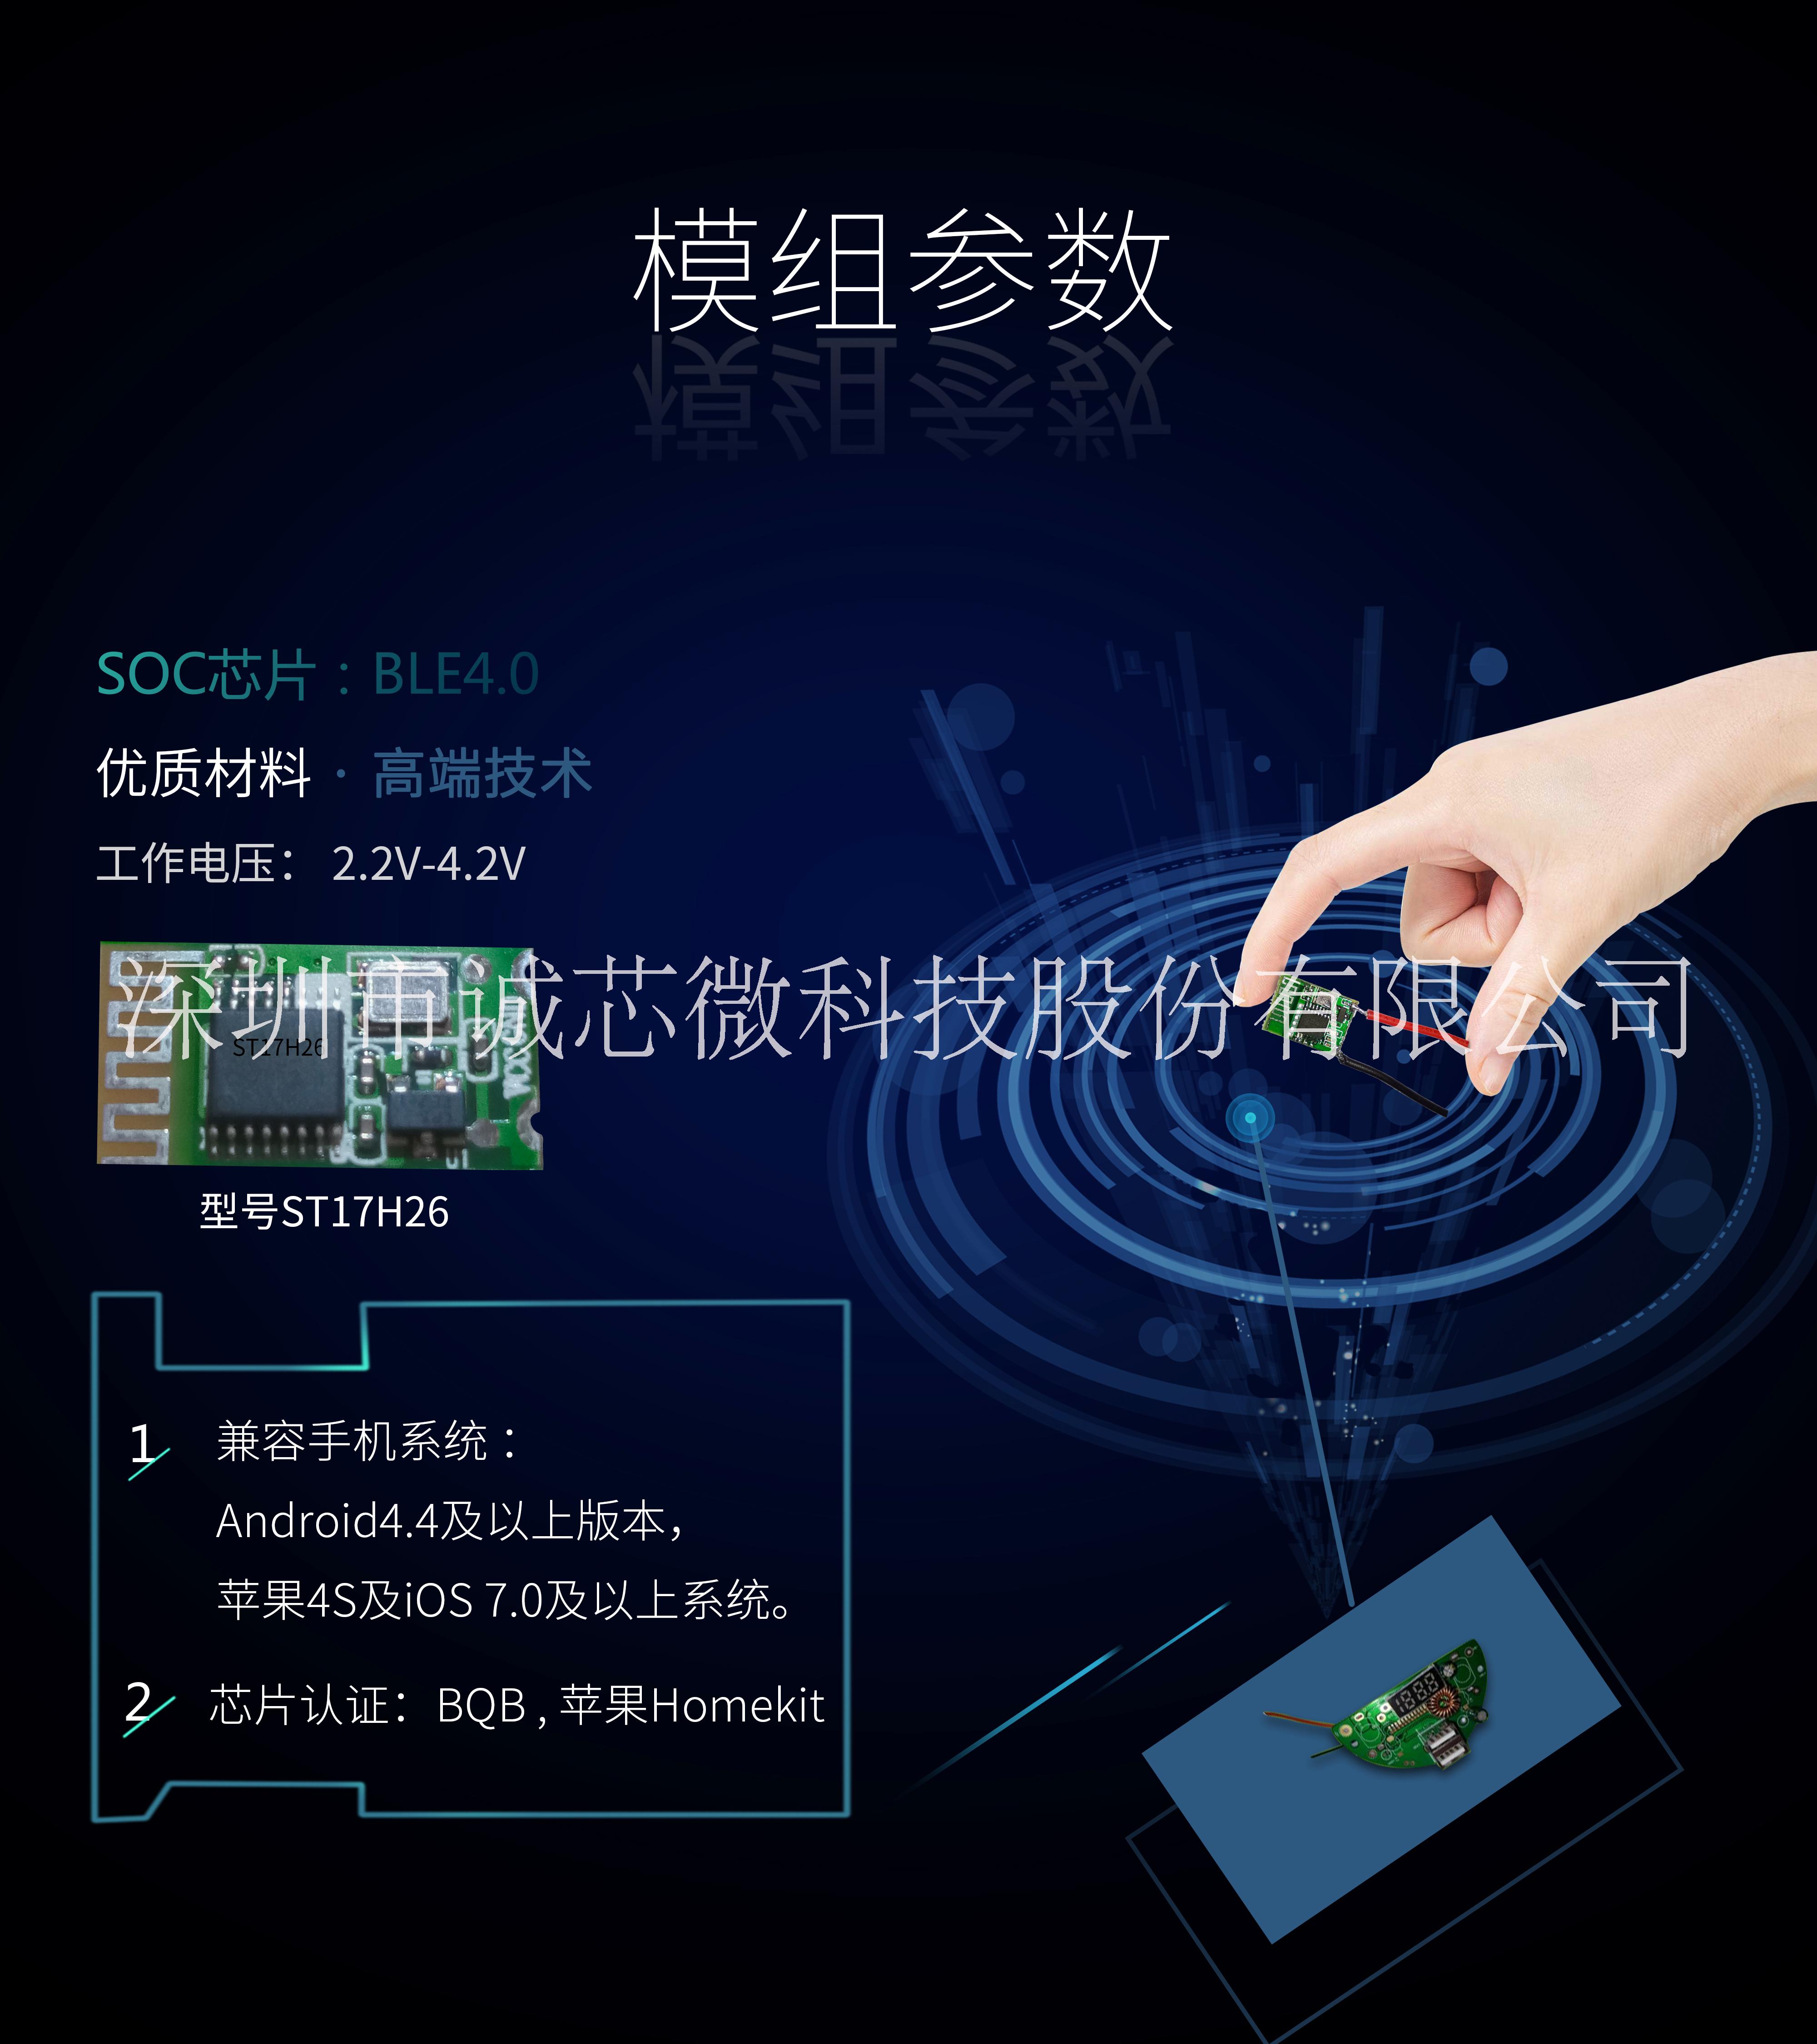 万物互联： 深圳蓝牙方案开发公司提供ST17H26蓝牙芯片，BLE4.0超低功耗芯片 ST17H26蓝牙防丢芯片